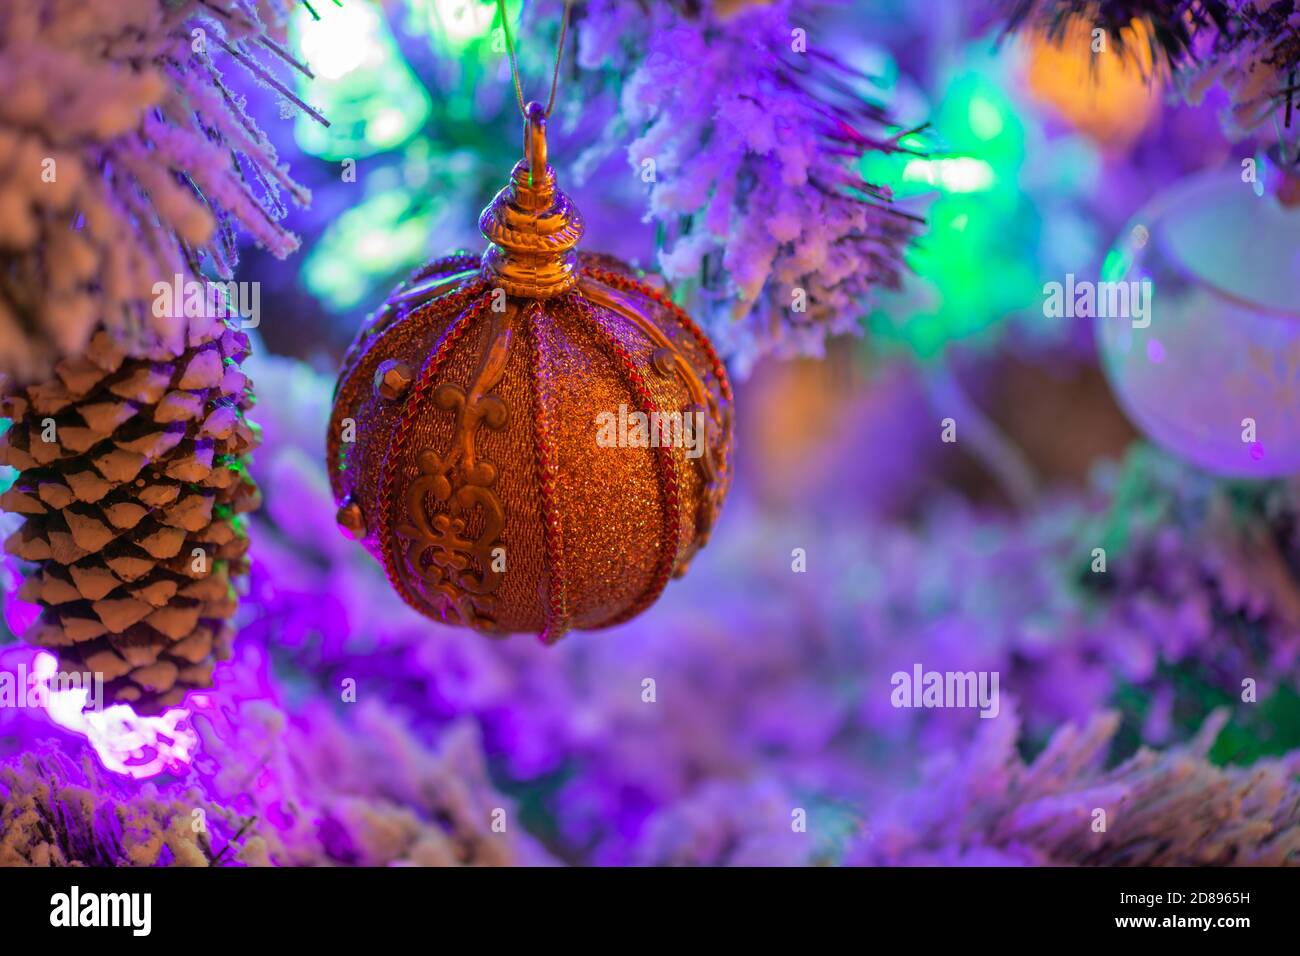 Magnifique boule de Noël sur l'arbre de Noël Banque D'Images